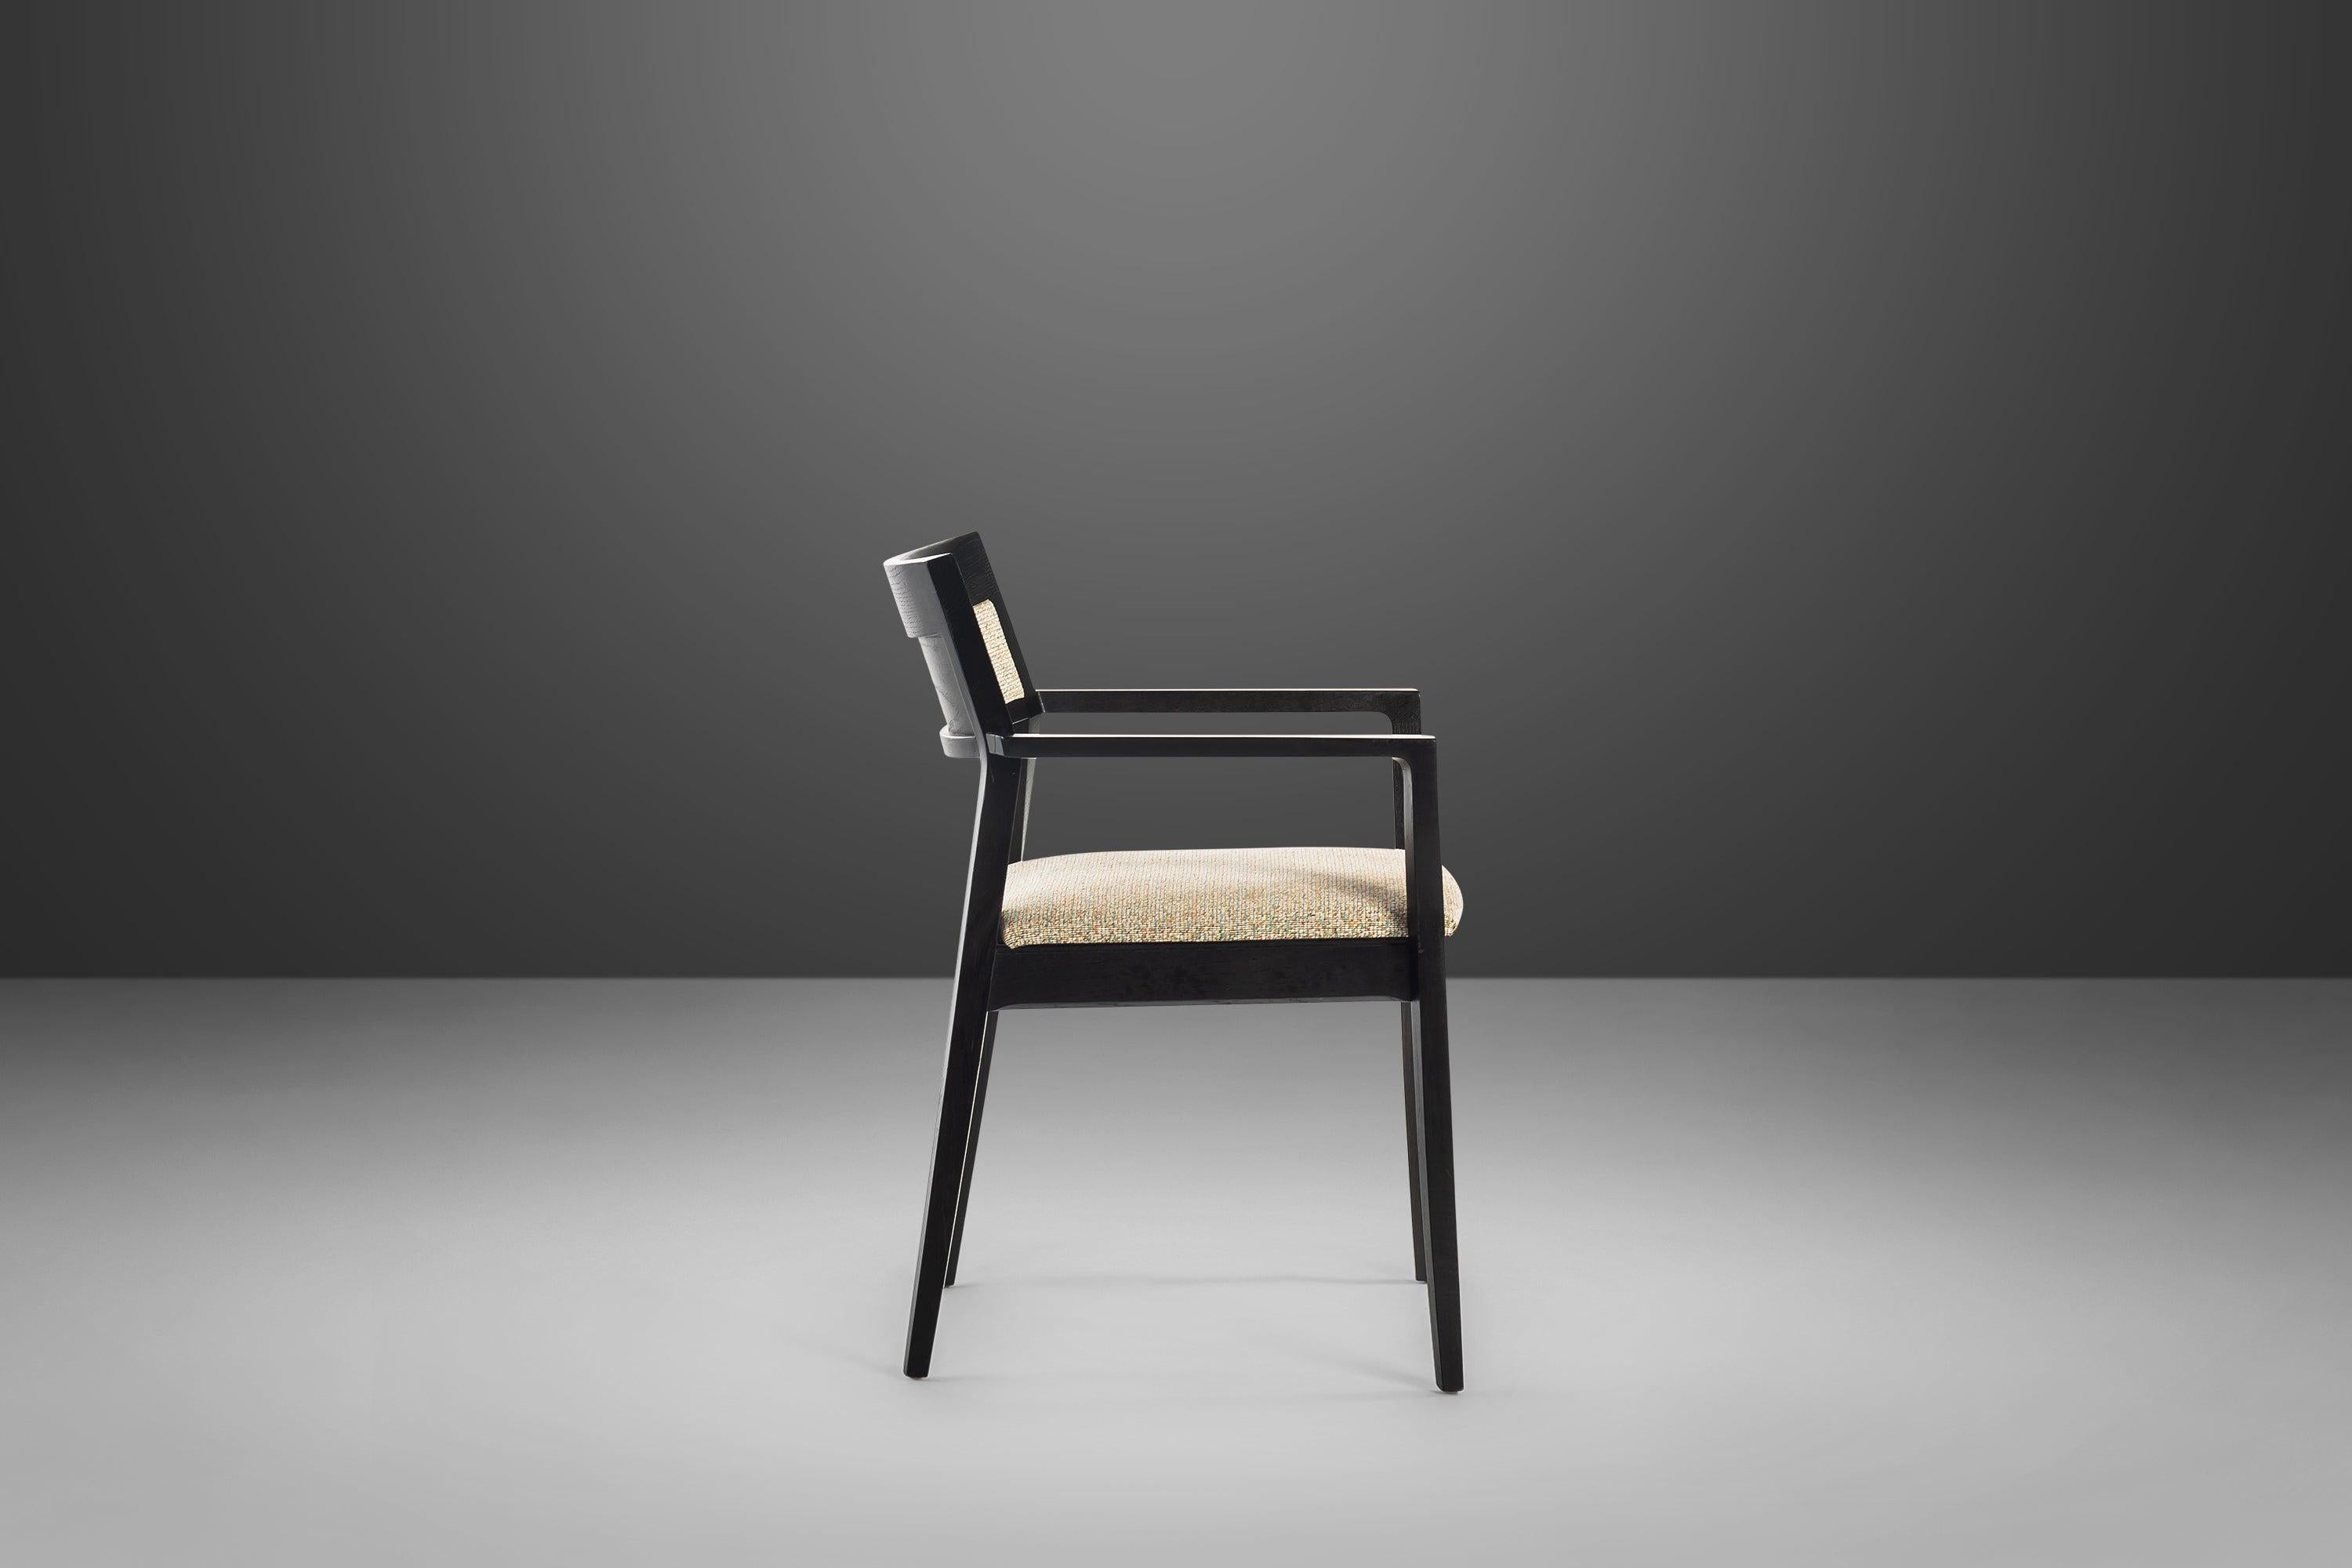 Un style magnifique et des sièges confortables. Le fauteuil Krusin de Knoll, avec son dossier rembourré, s'intègre à une large gamme de motifs établis grâce à son élégance subtile et à son design simple. Idéales pour la maison et le bureau, ces